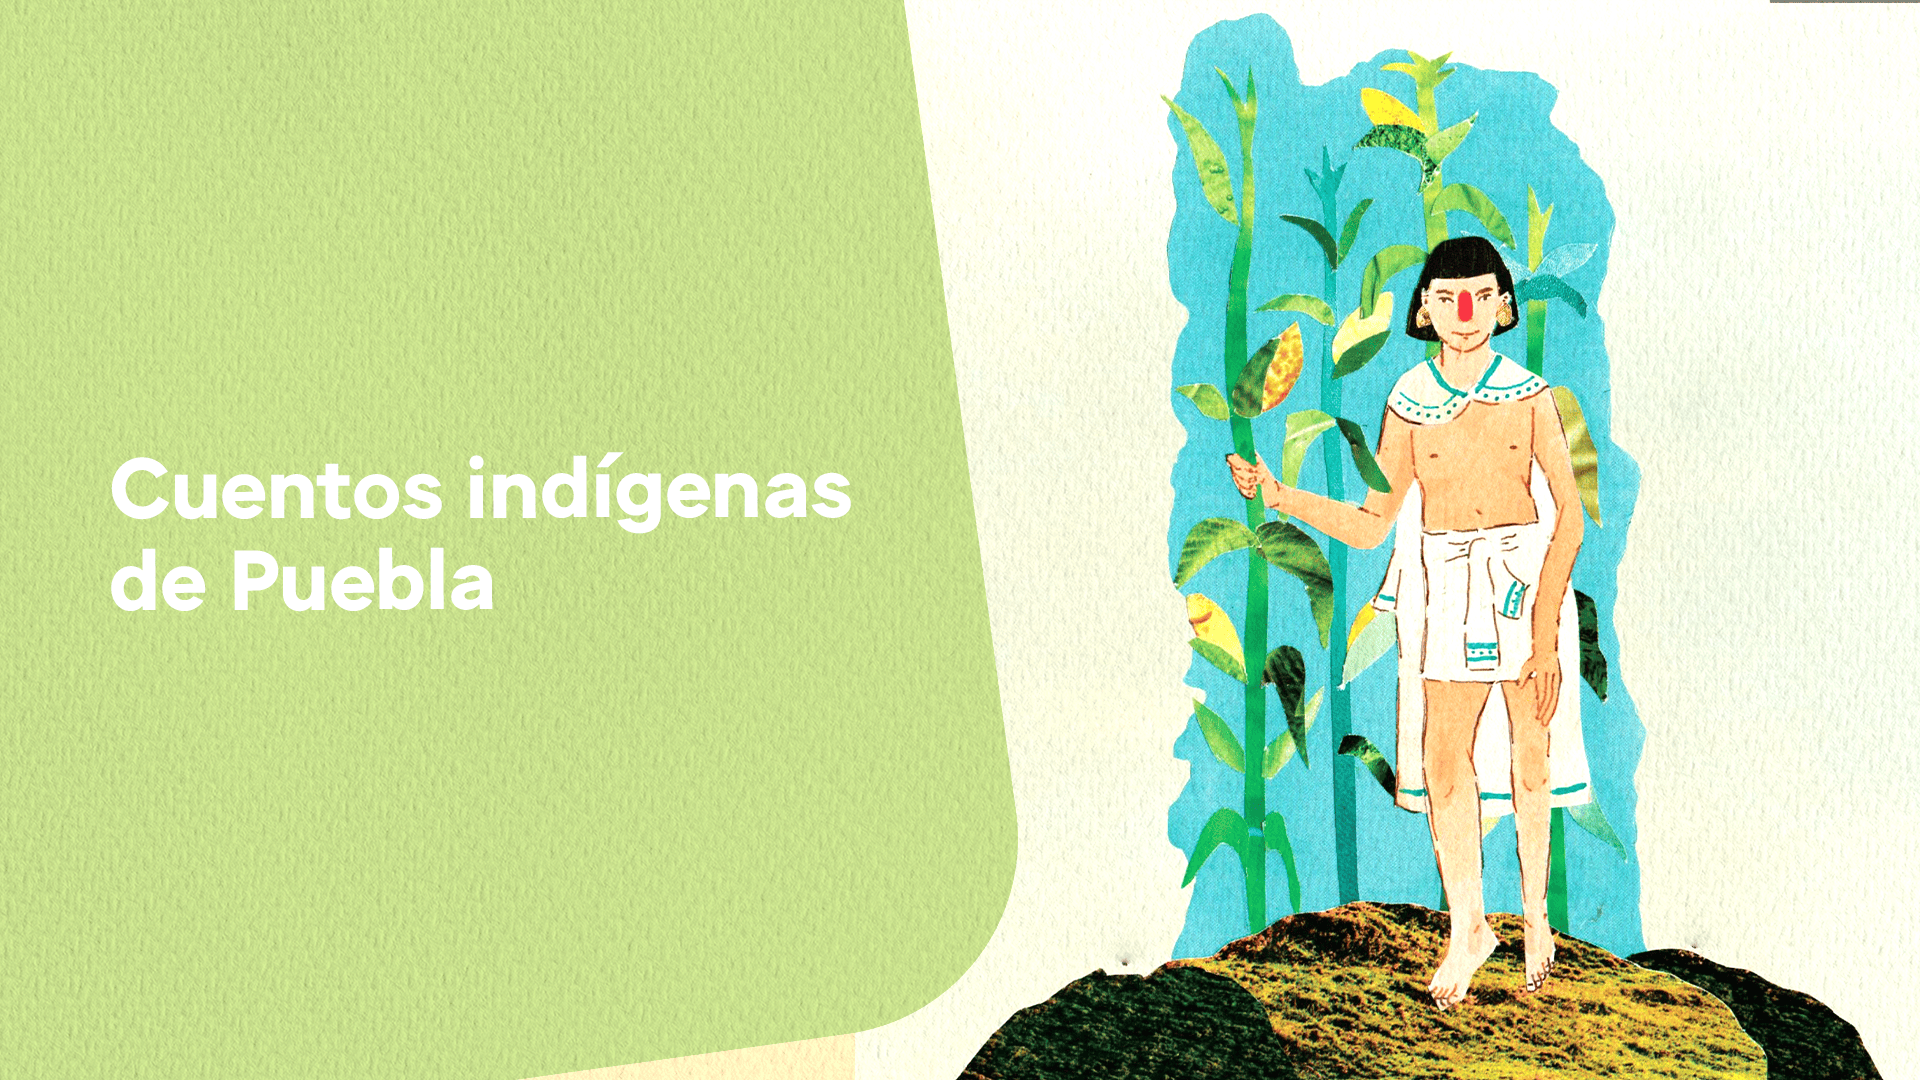 Cuentos indígenas de Puebla